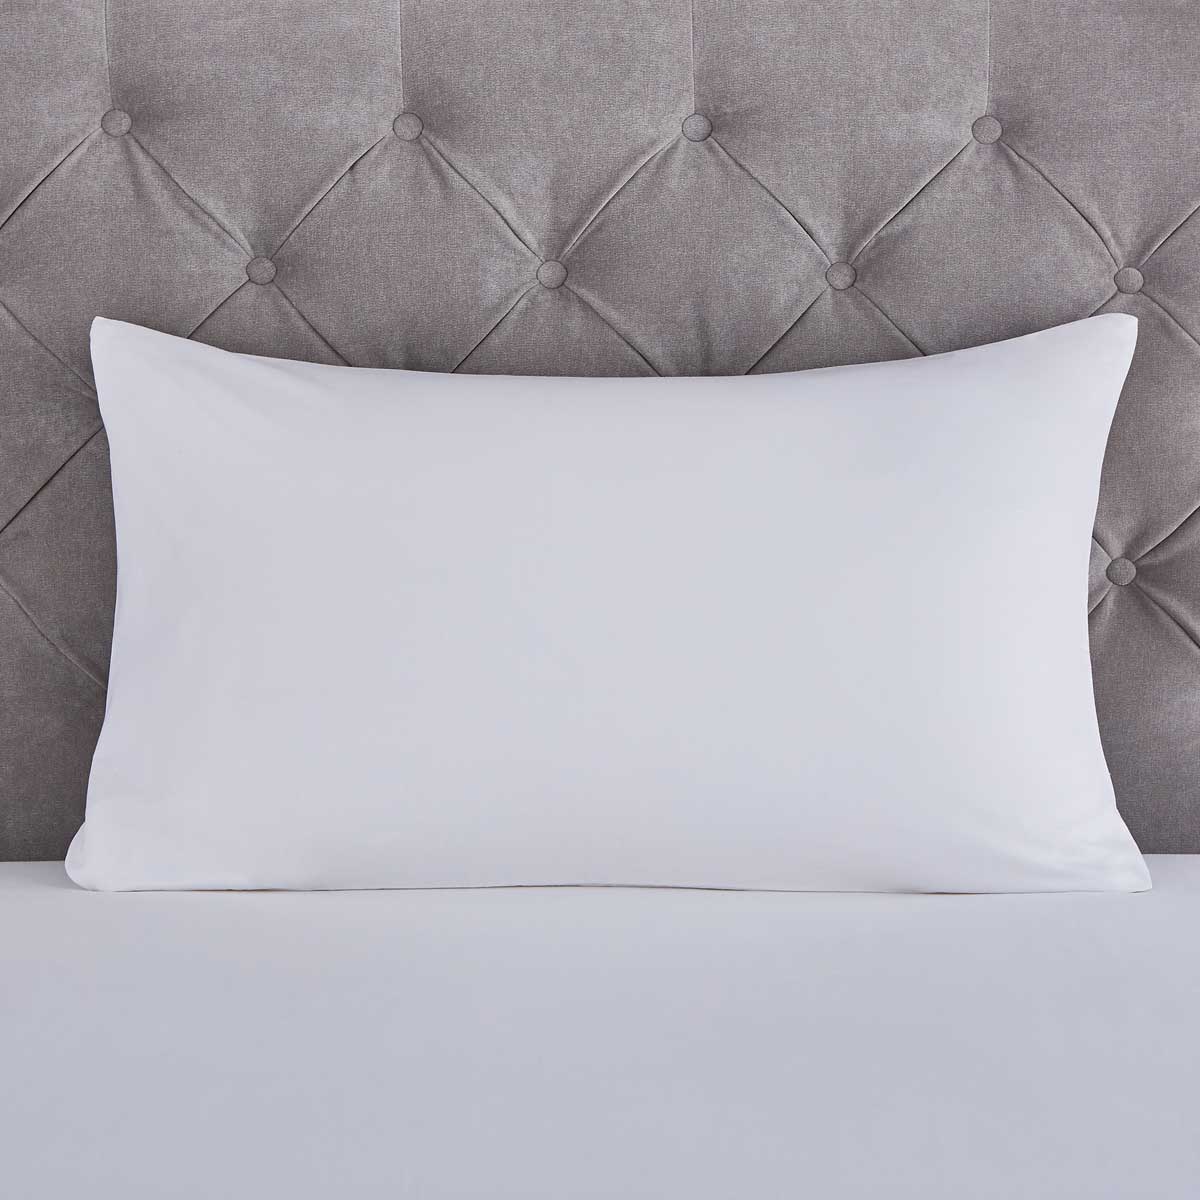 Pair of 100% Cotton Pillow Protectors - DUSK